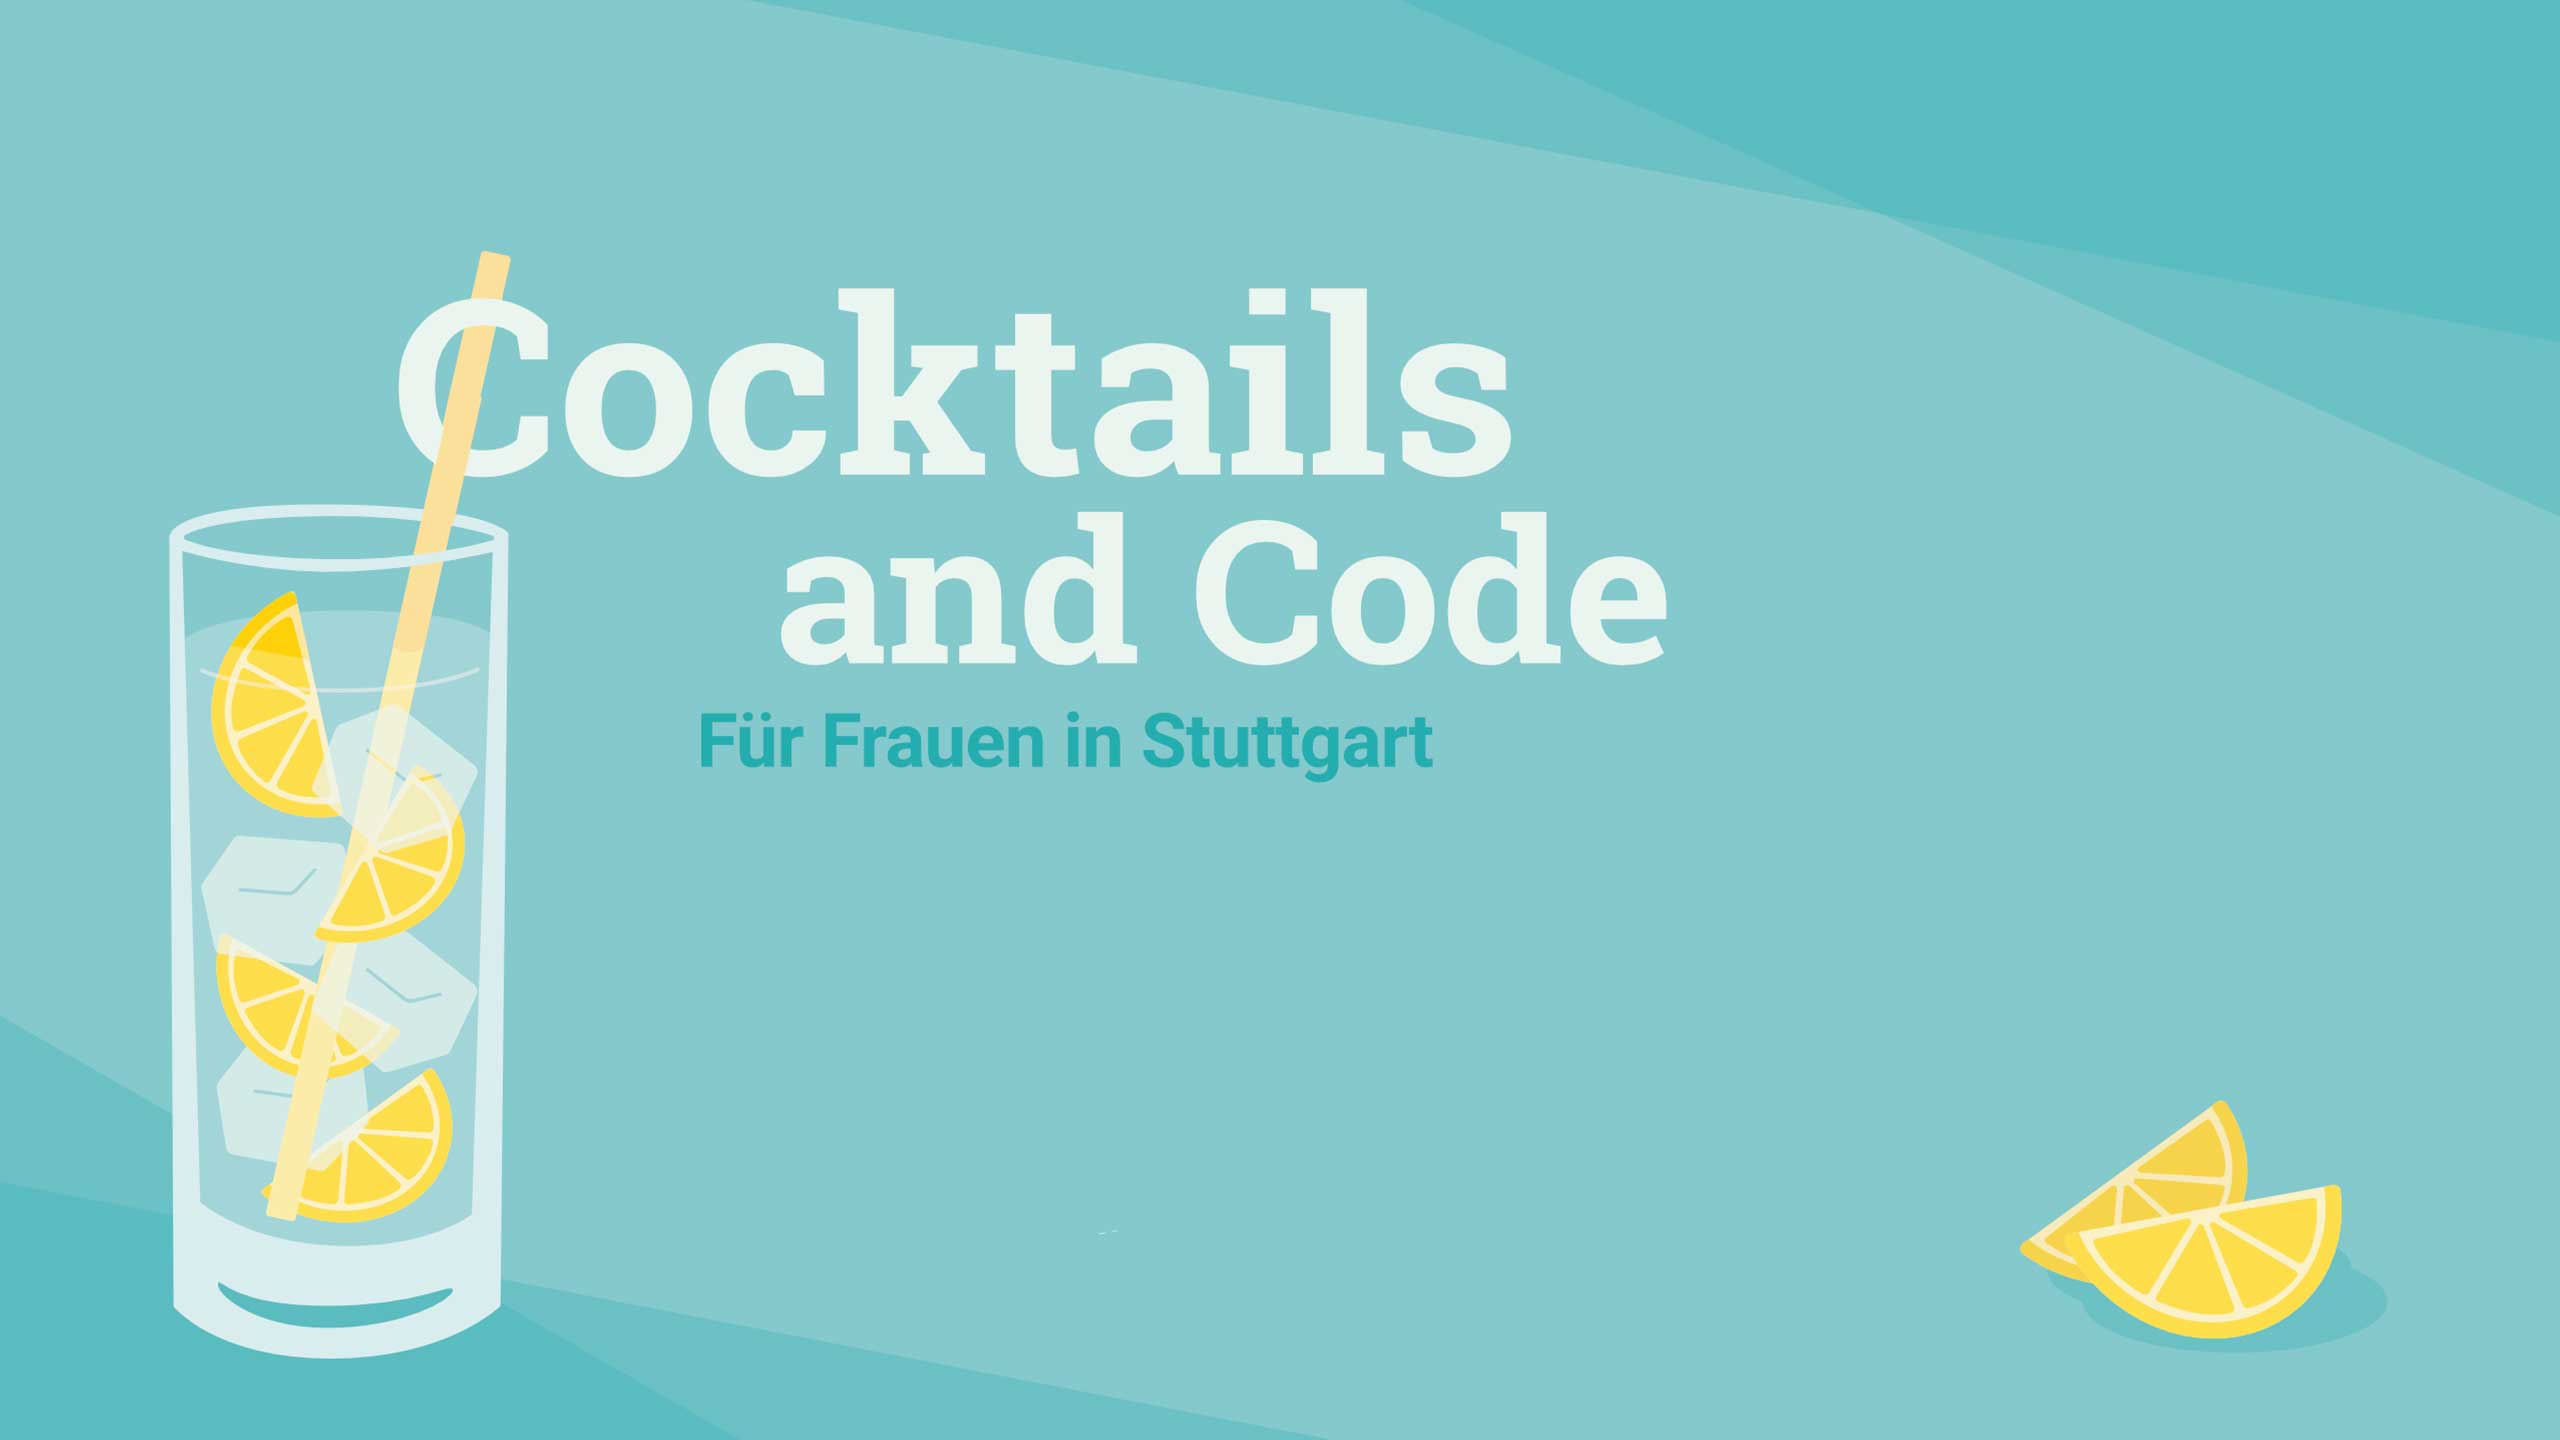 Cocktails & Code - Cocktails & Code für Frauen in der IT in Stuttgart / copy Ready to Code e.V.